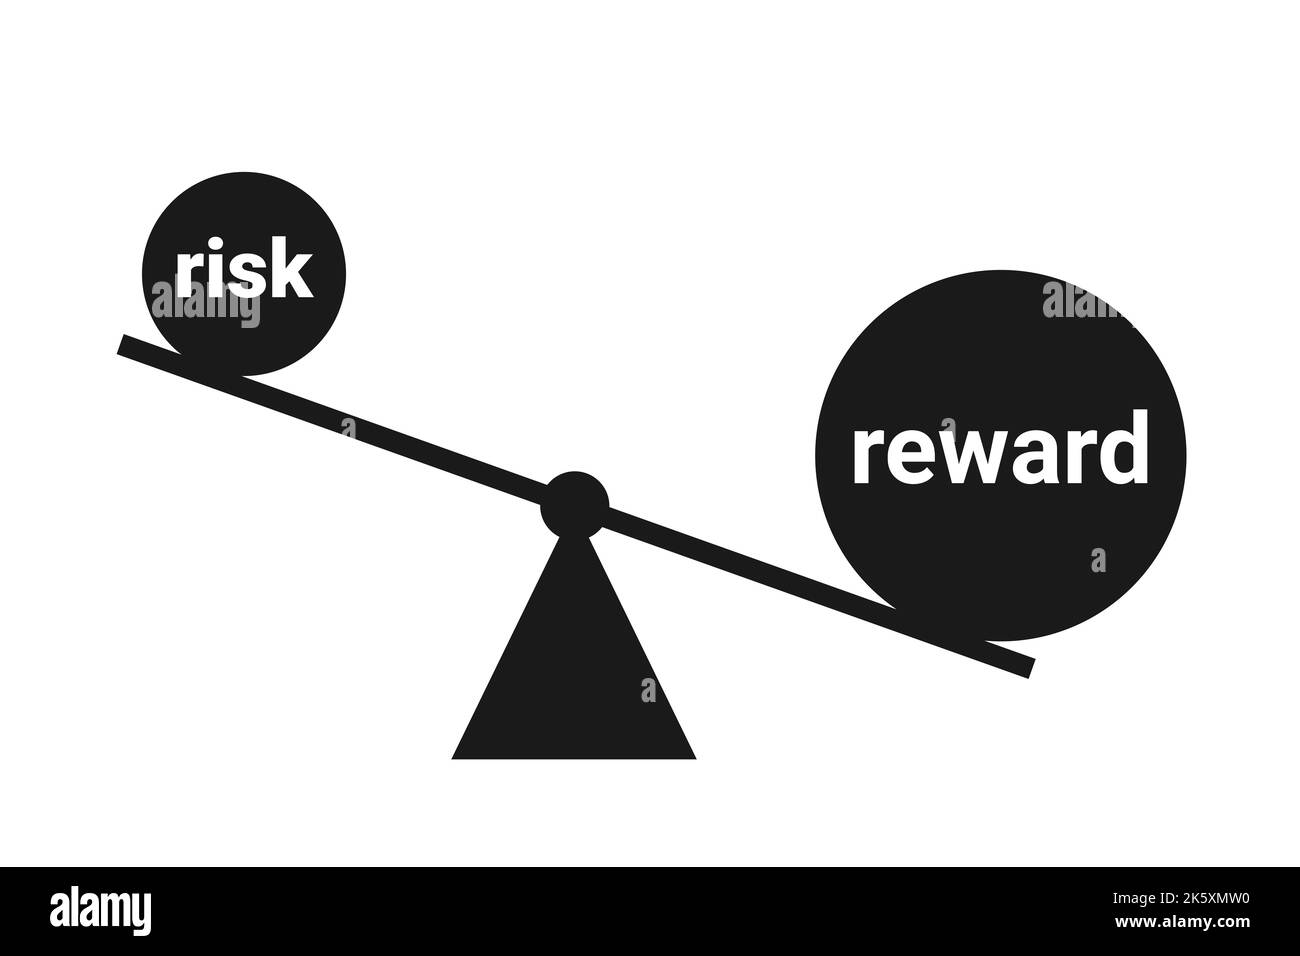 Risiko- und Gewinnverhältnis – Ausgleich und Vergleich zwischen riskanten gefährlichen Gefahren und profitablem Gewinn und Gewinn. Vektorgrafik isoliert auf Weiß. Stockfoto